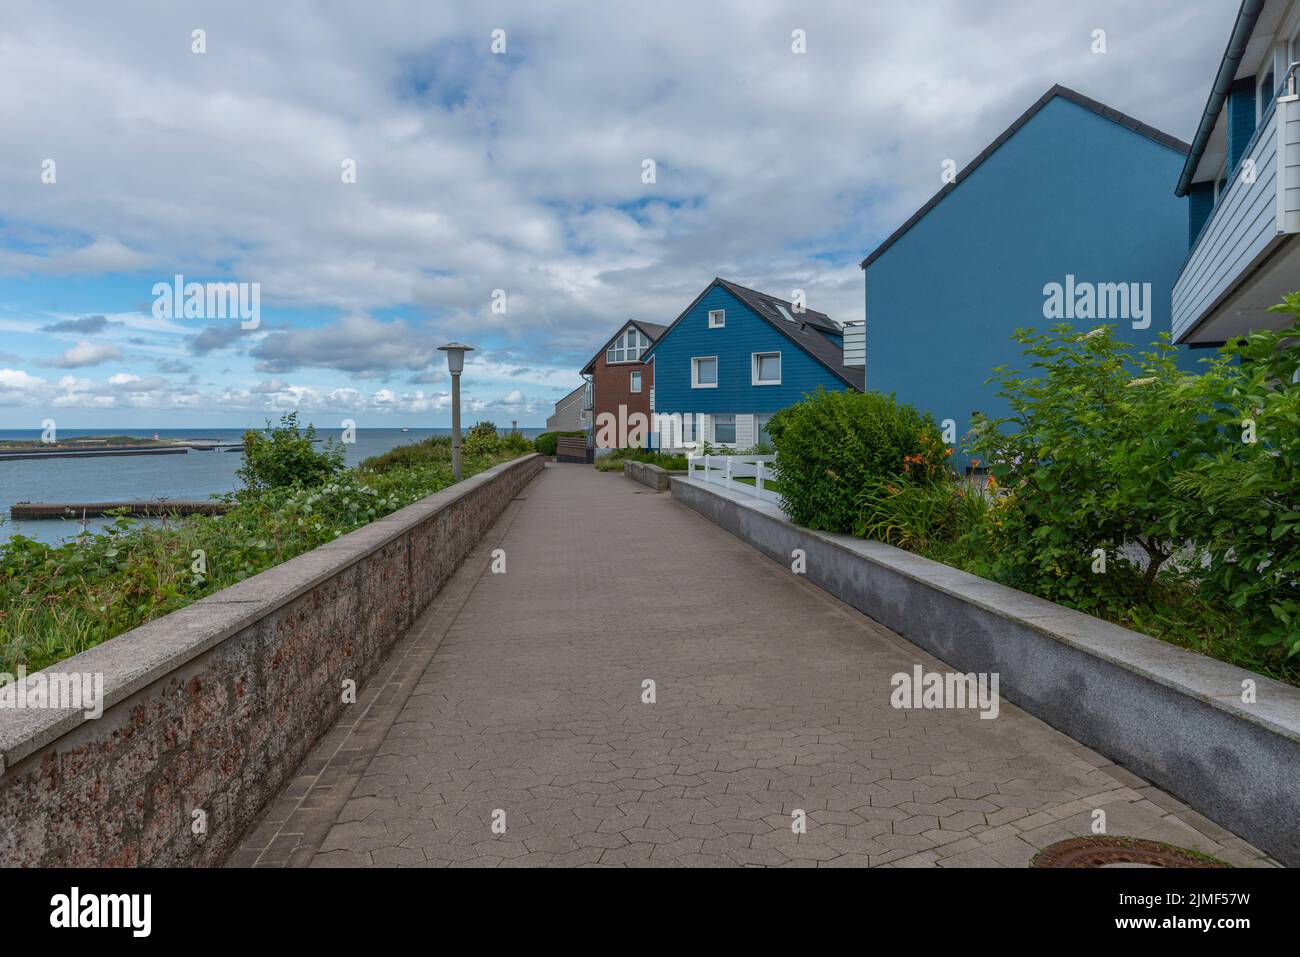 Arquitectura típica con colores de tierra y gables asimétricos en la Alta Tierra de la isla del Mar del Norte Heligoland, Schleswig-Holstein, norte de Alemania Foto de stock